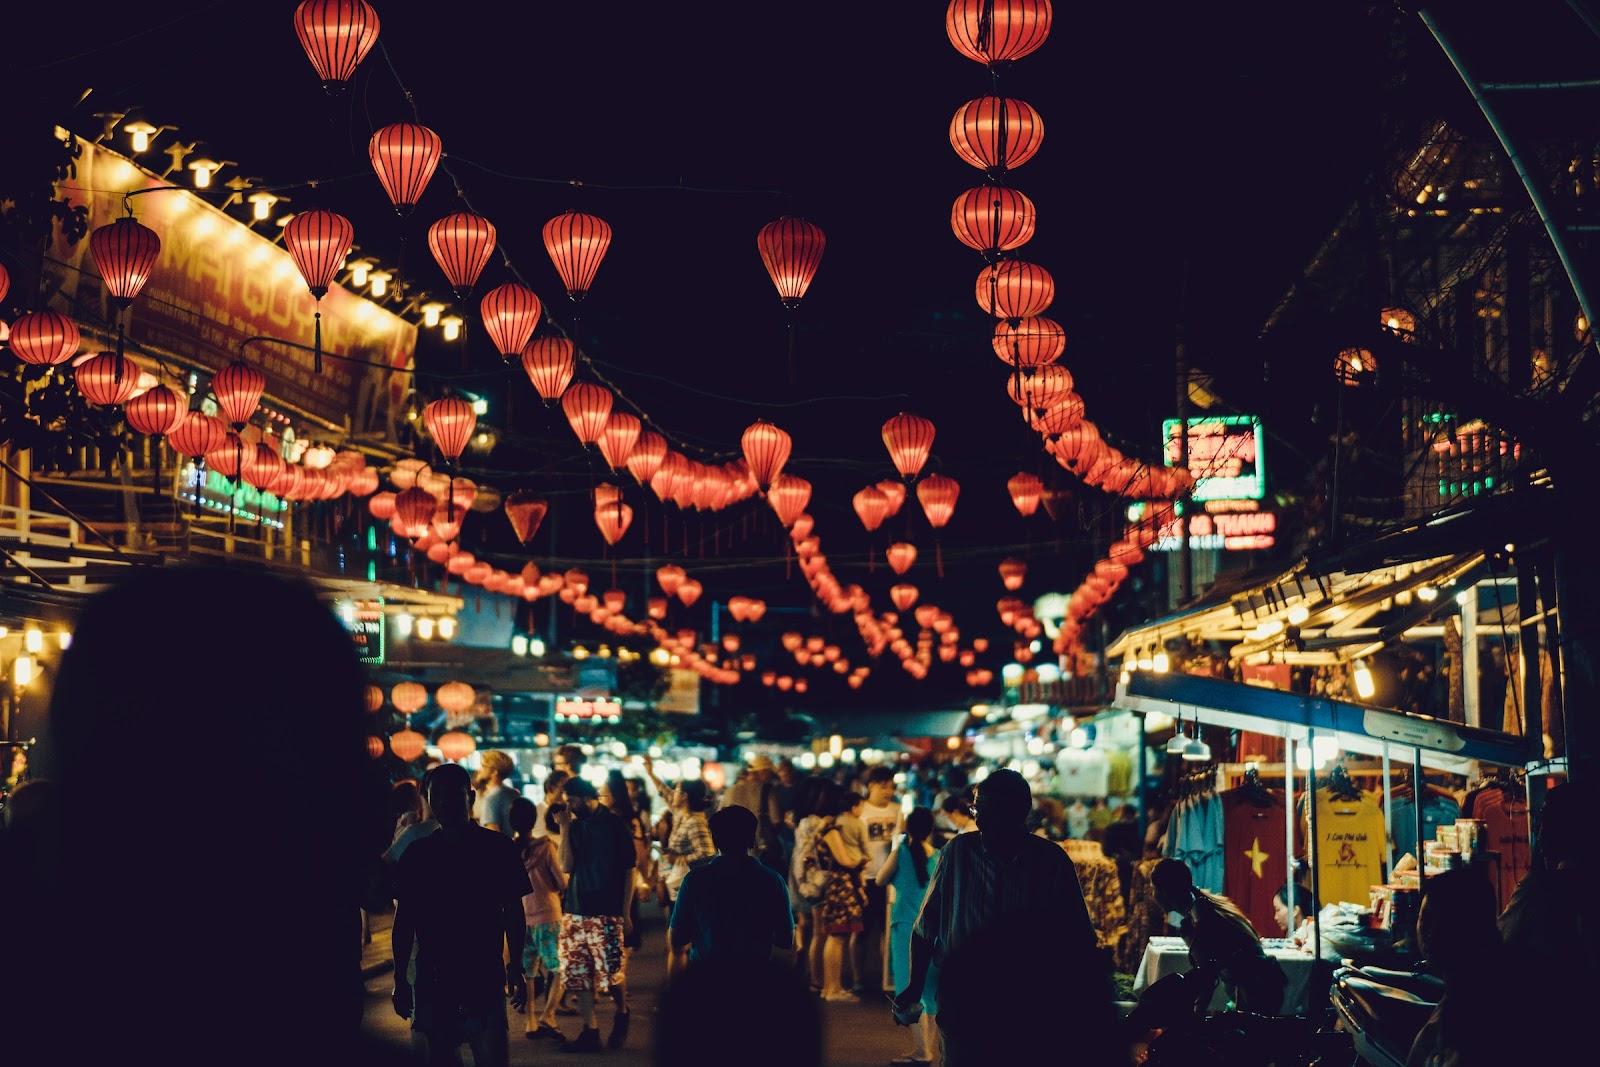 A busy night market full of lanterns in Vietnam. 